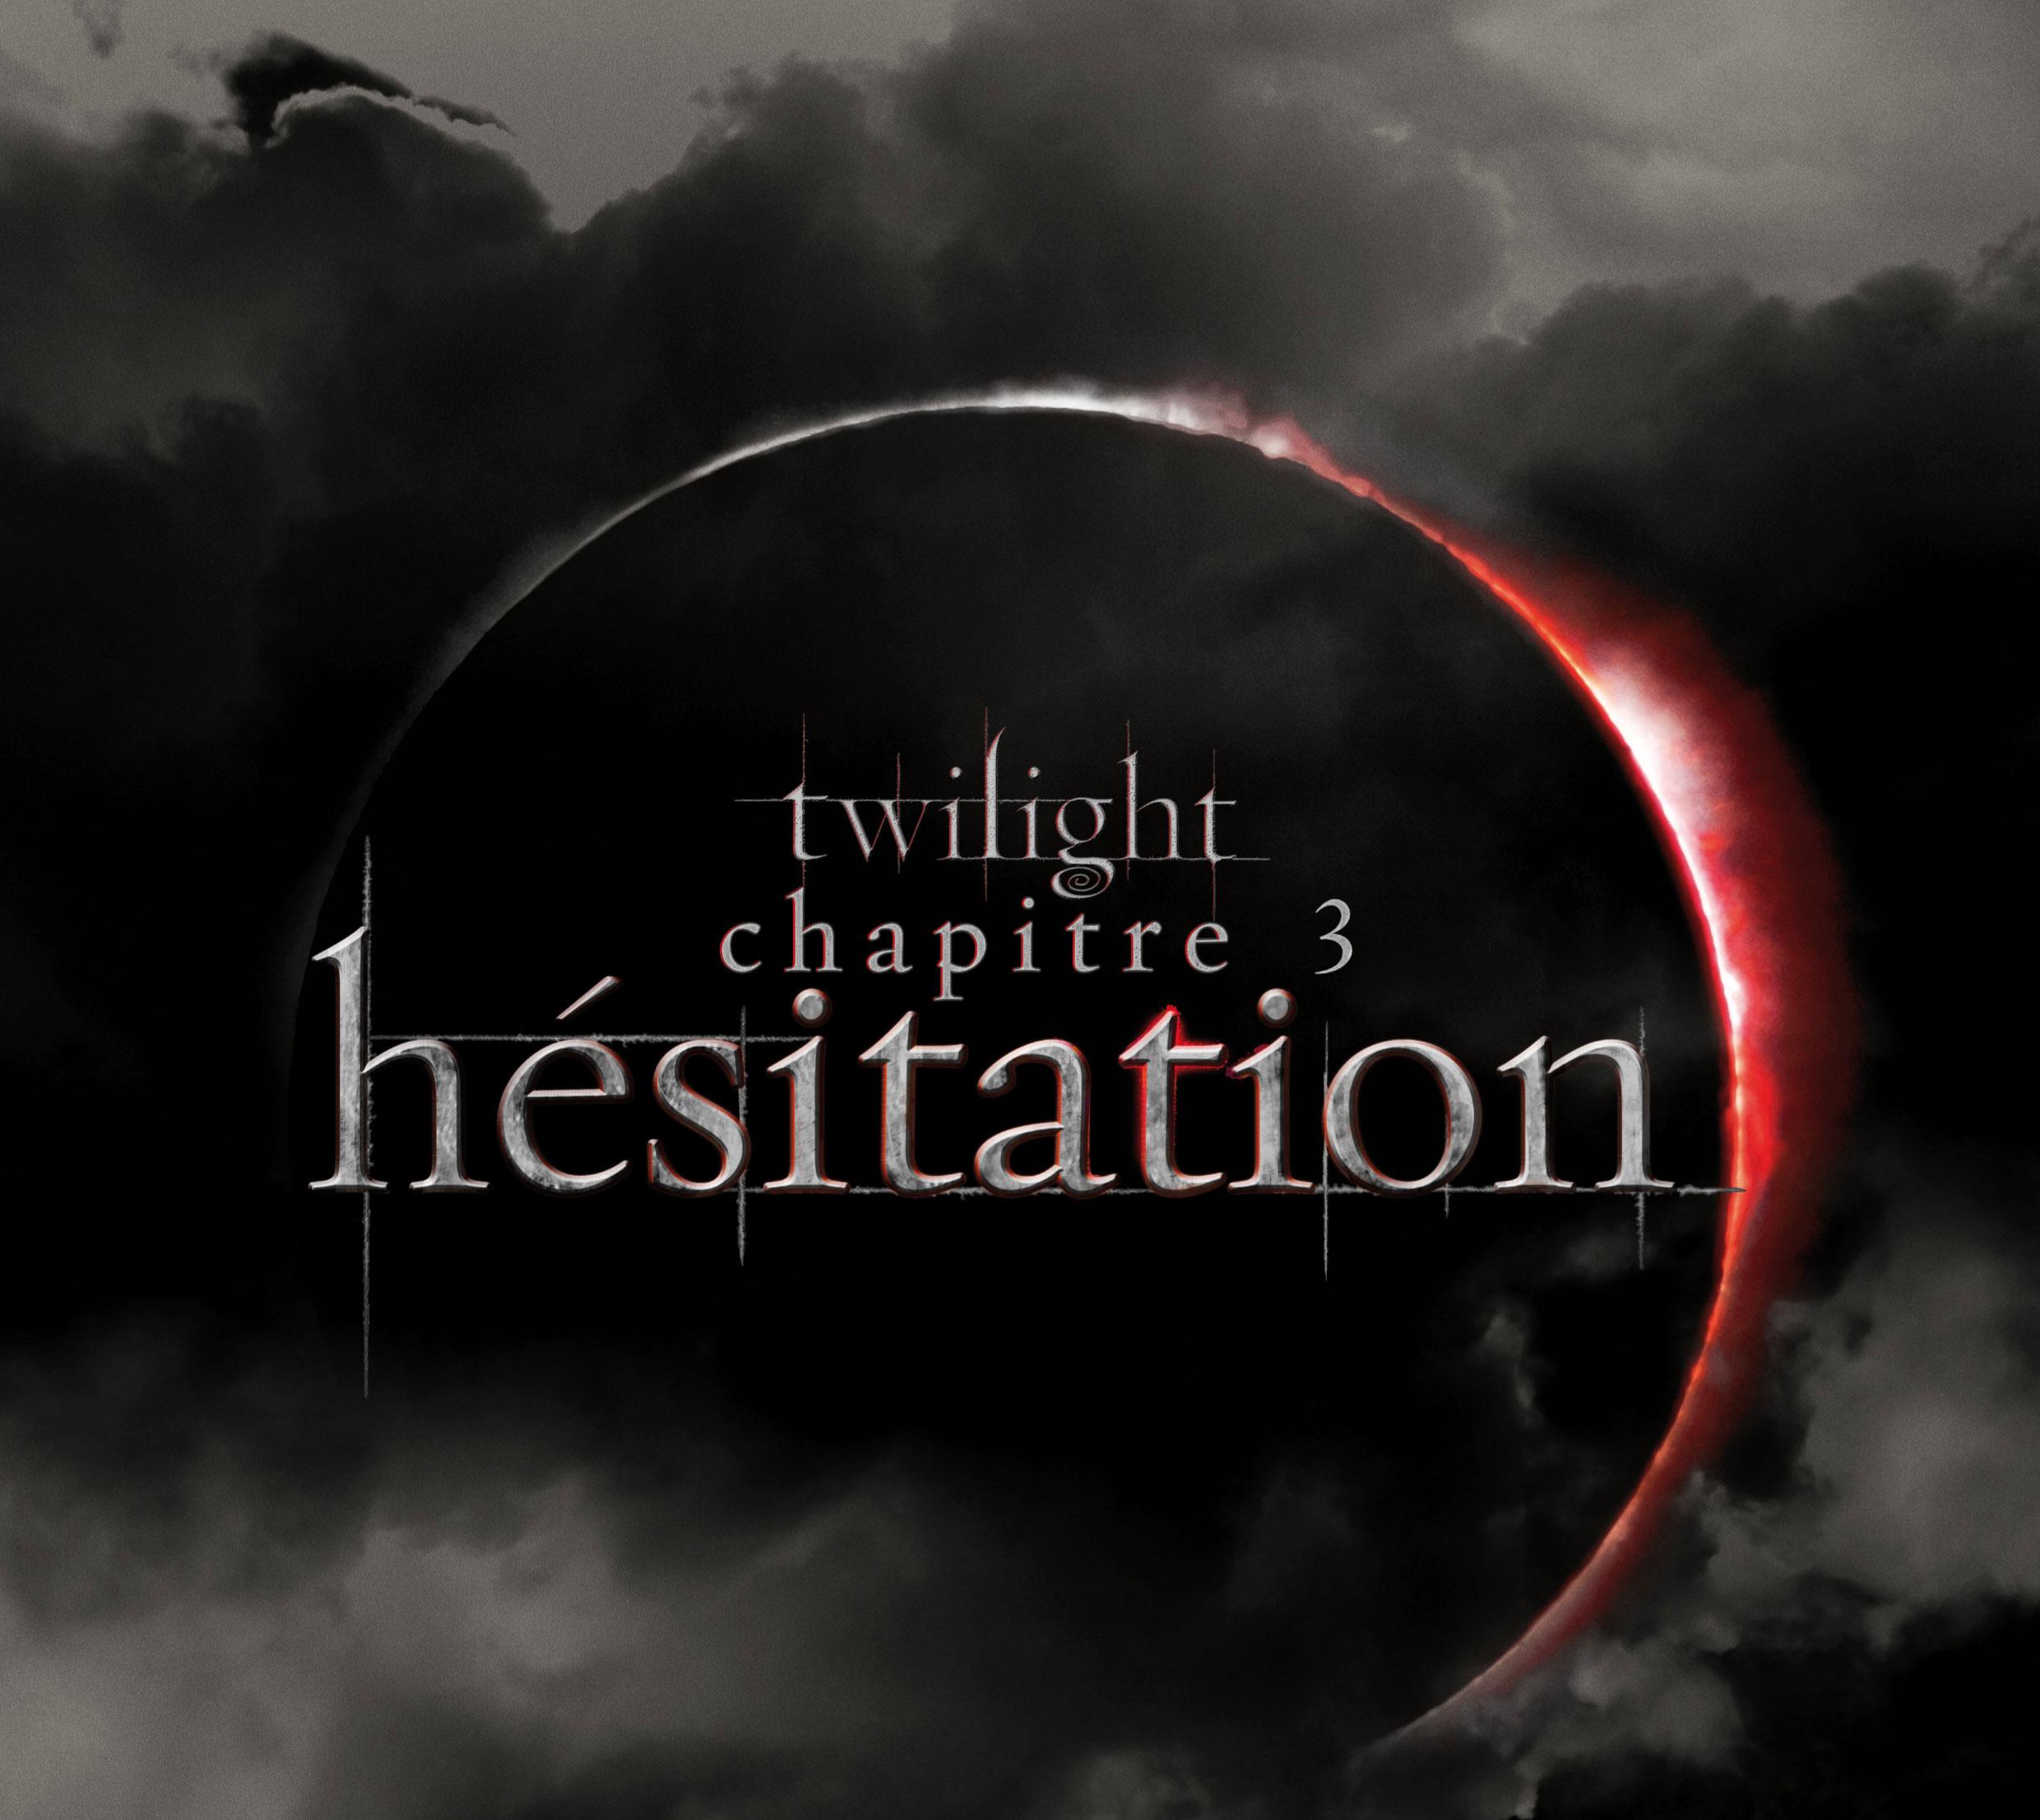 Twilight-chapitre 3: Hésitation, voici la bande annonce!